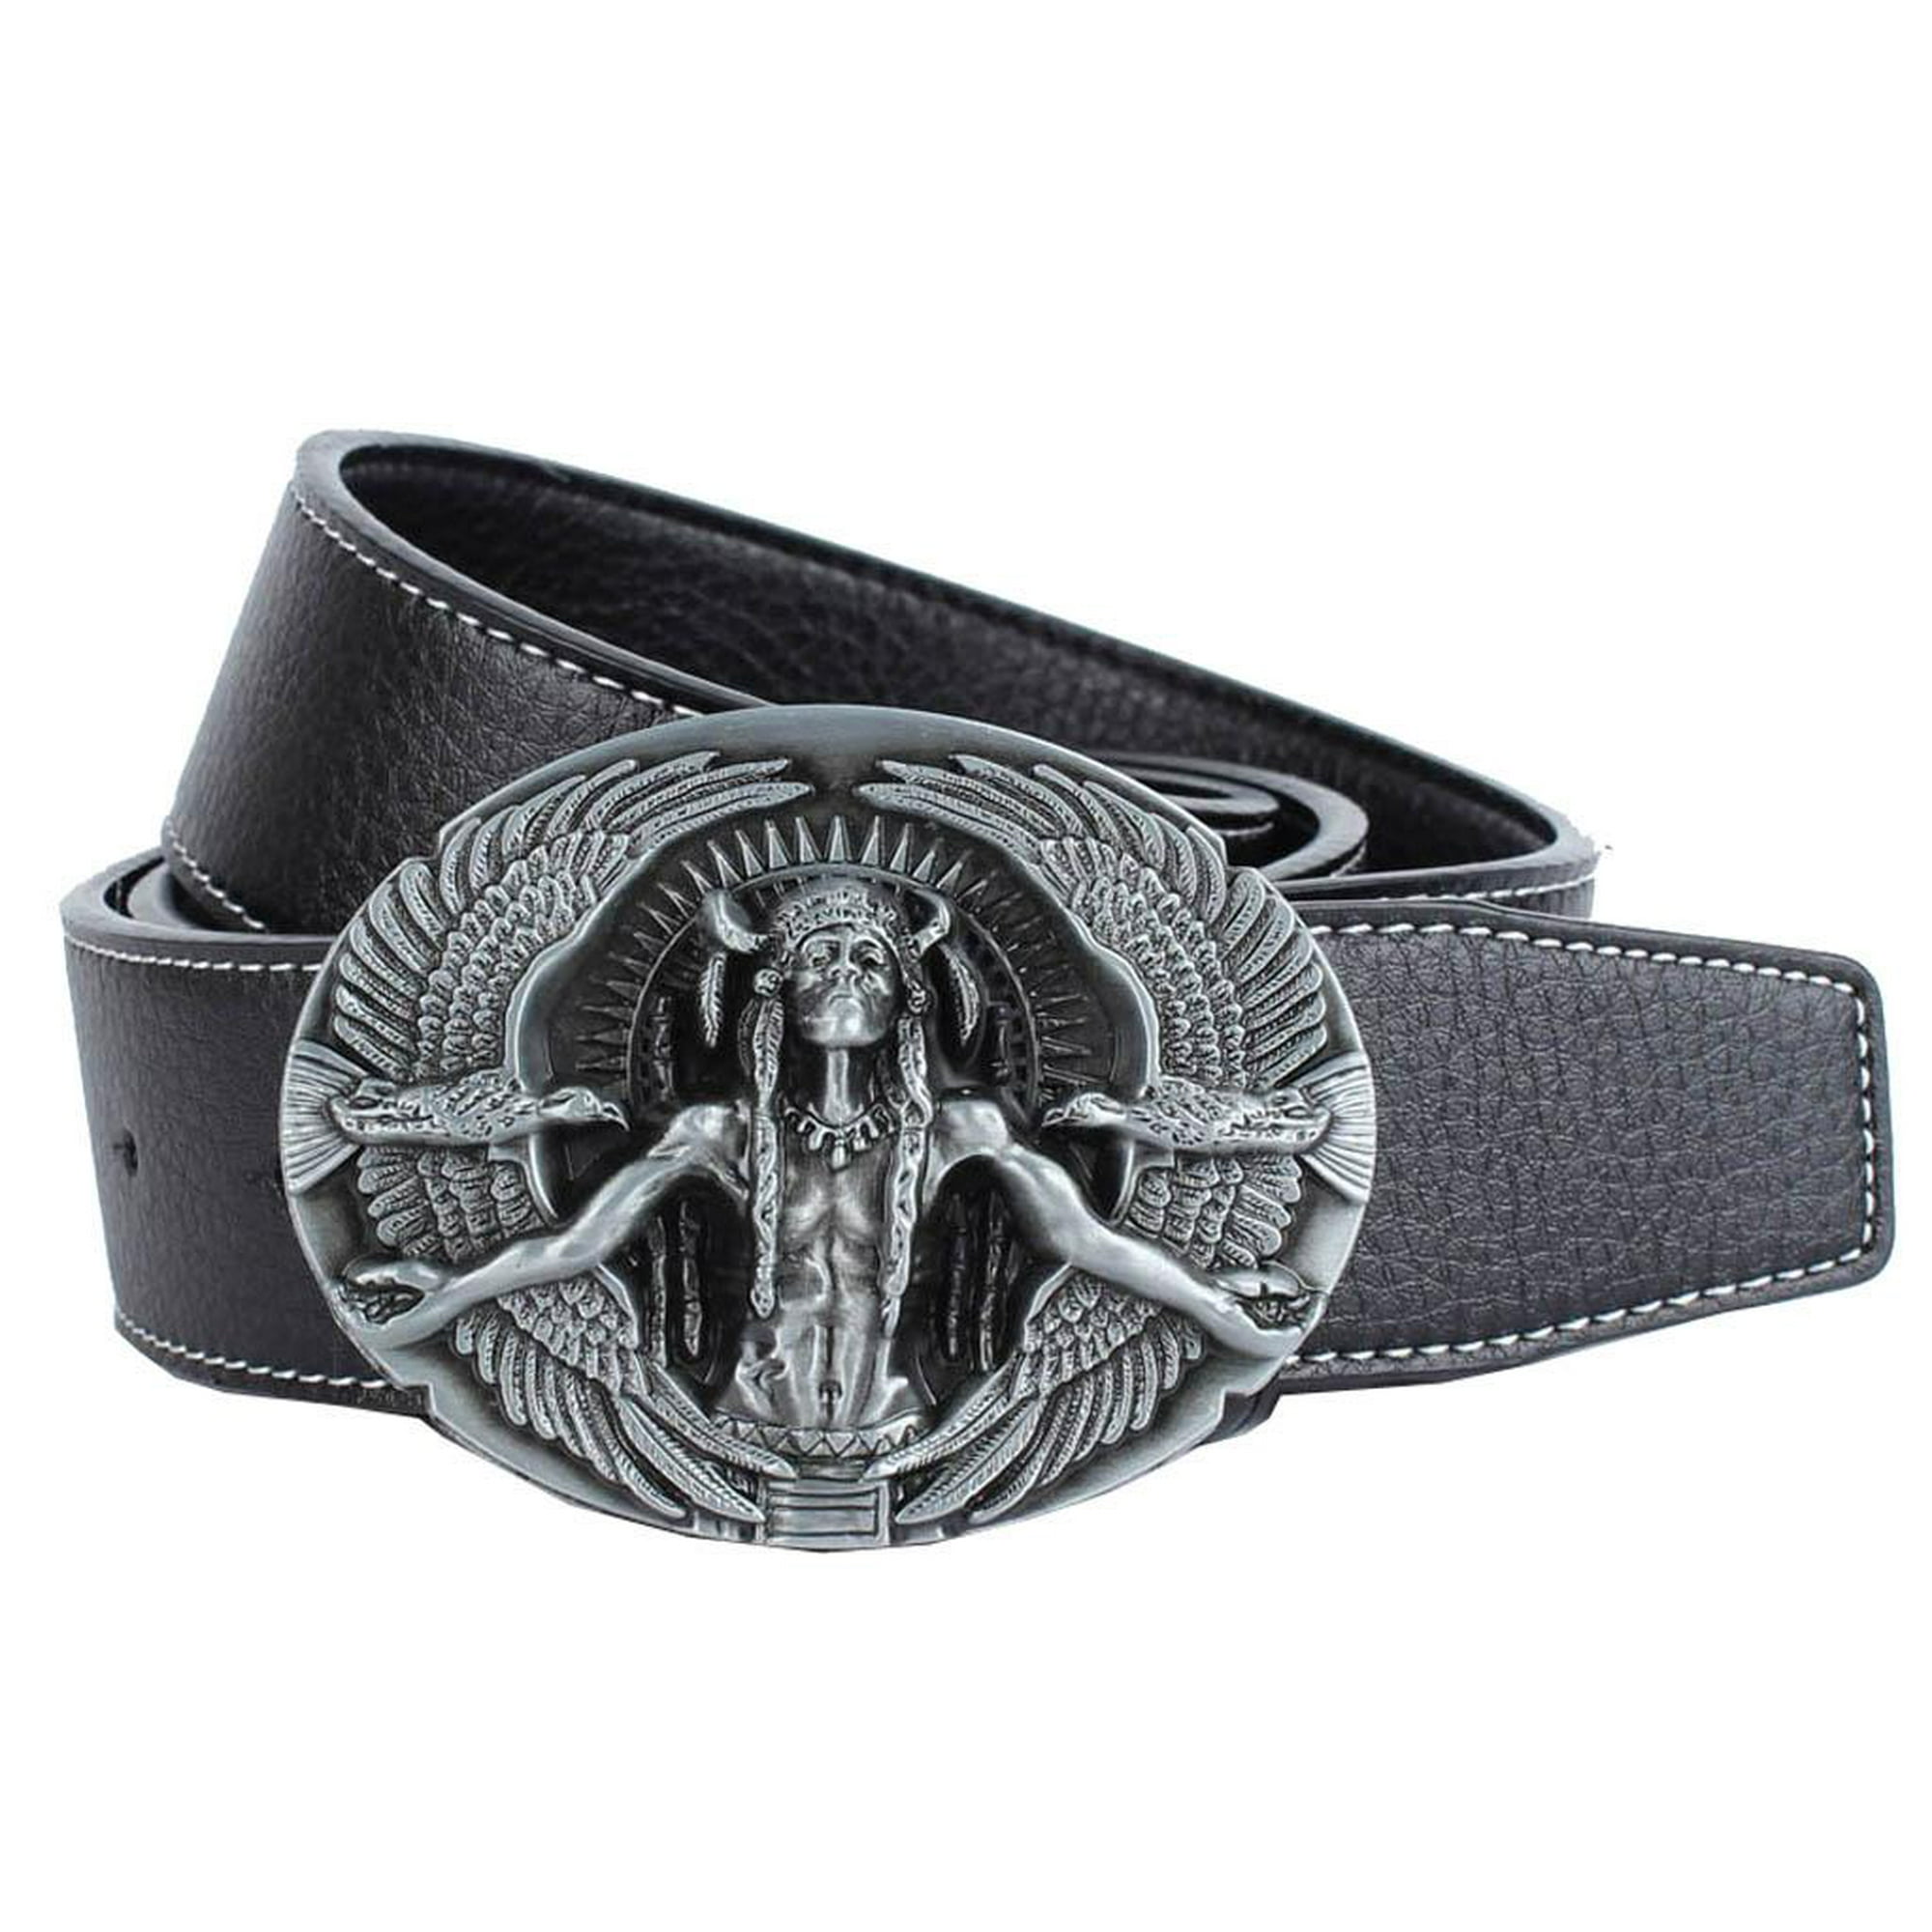 Cinturón de vaquero retro occidental para hombre, hebilla de de águila,  vestido de trabajo de negoci Yuyangstore Cinturón de vaquero occidental